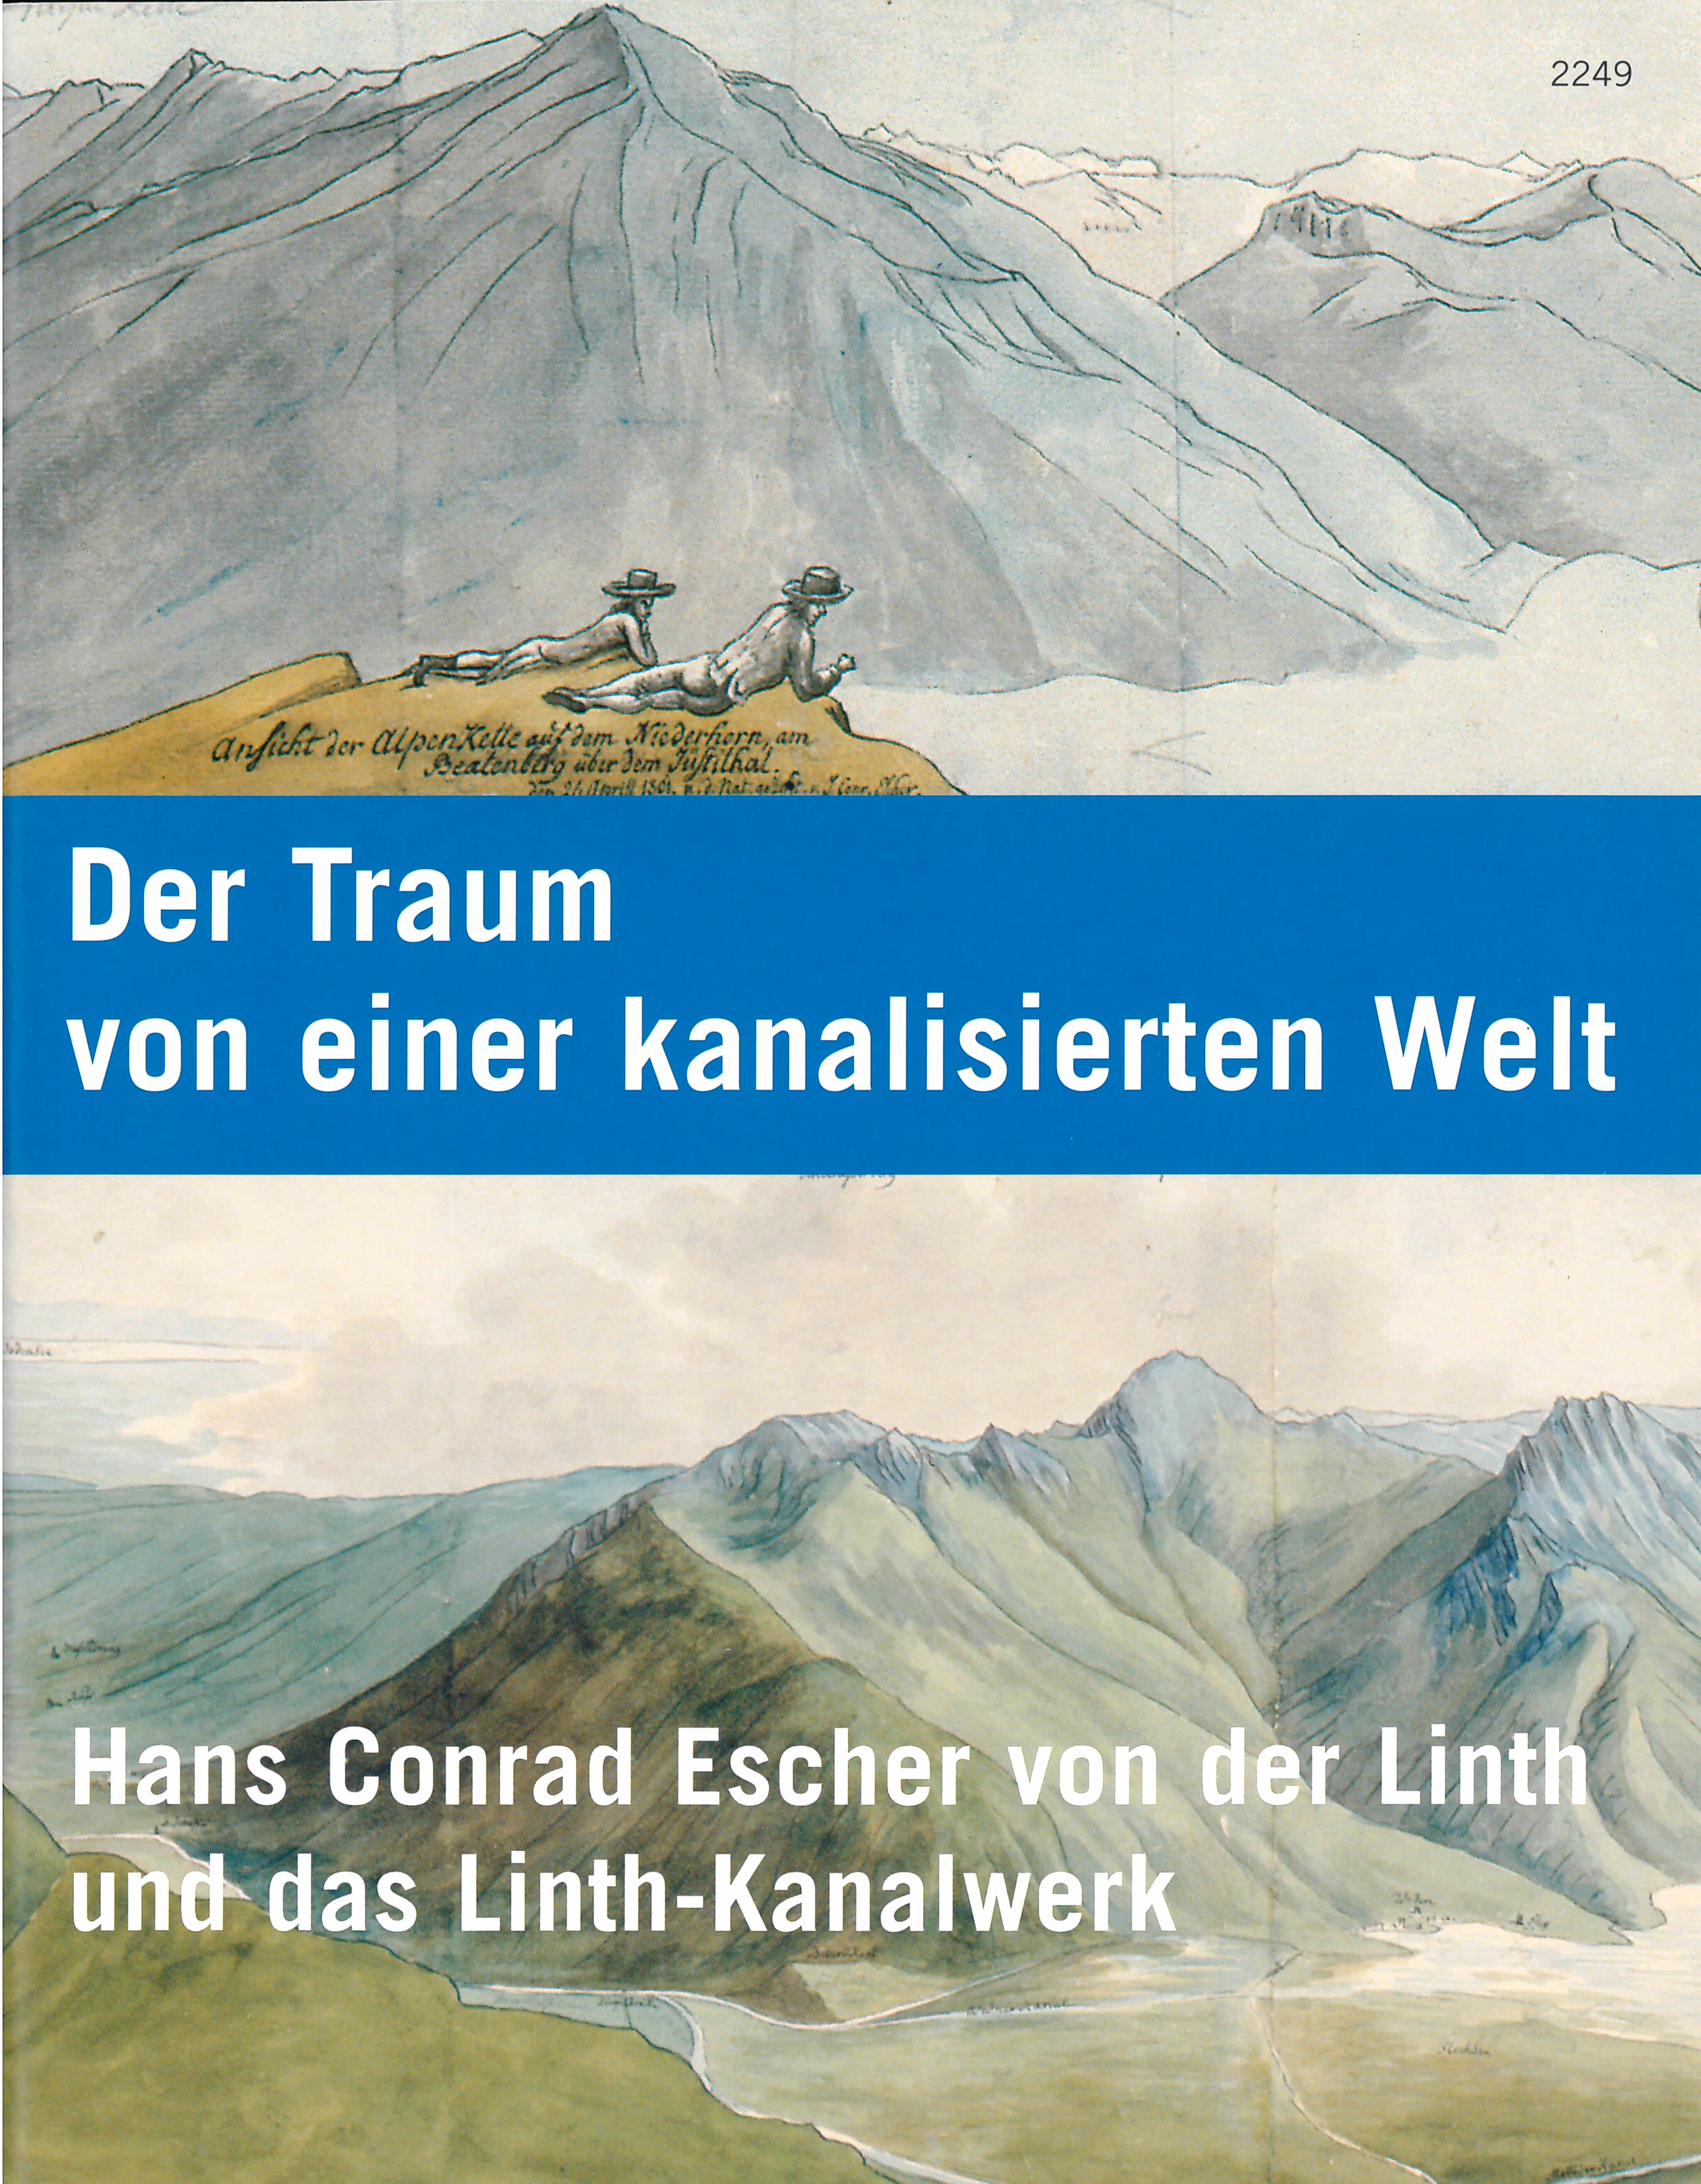 Der Traum von einer kanalisierten Welt. Hans Conrad Escher von der Linth und das Linth-Kanalwerk